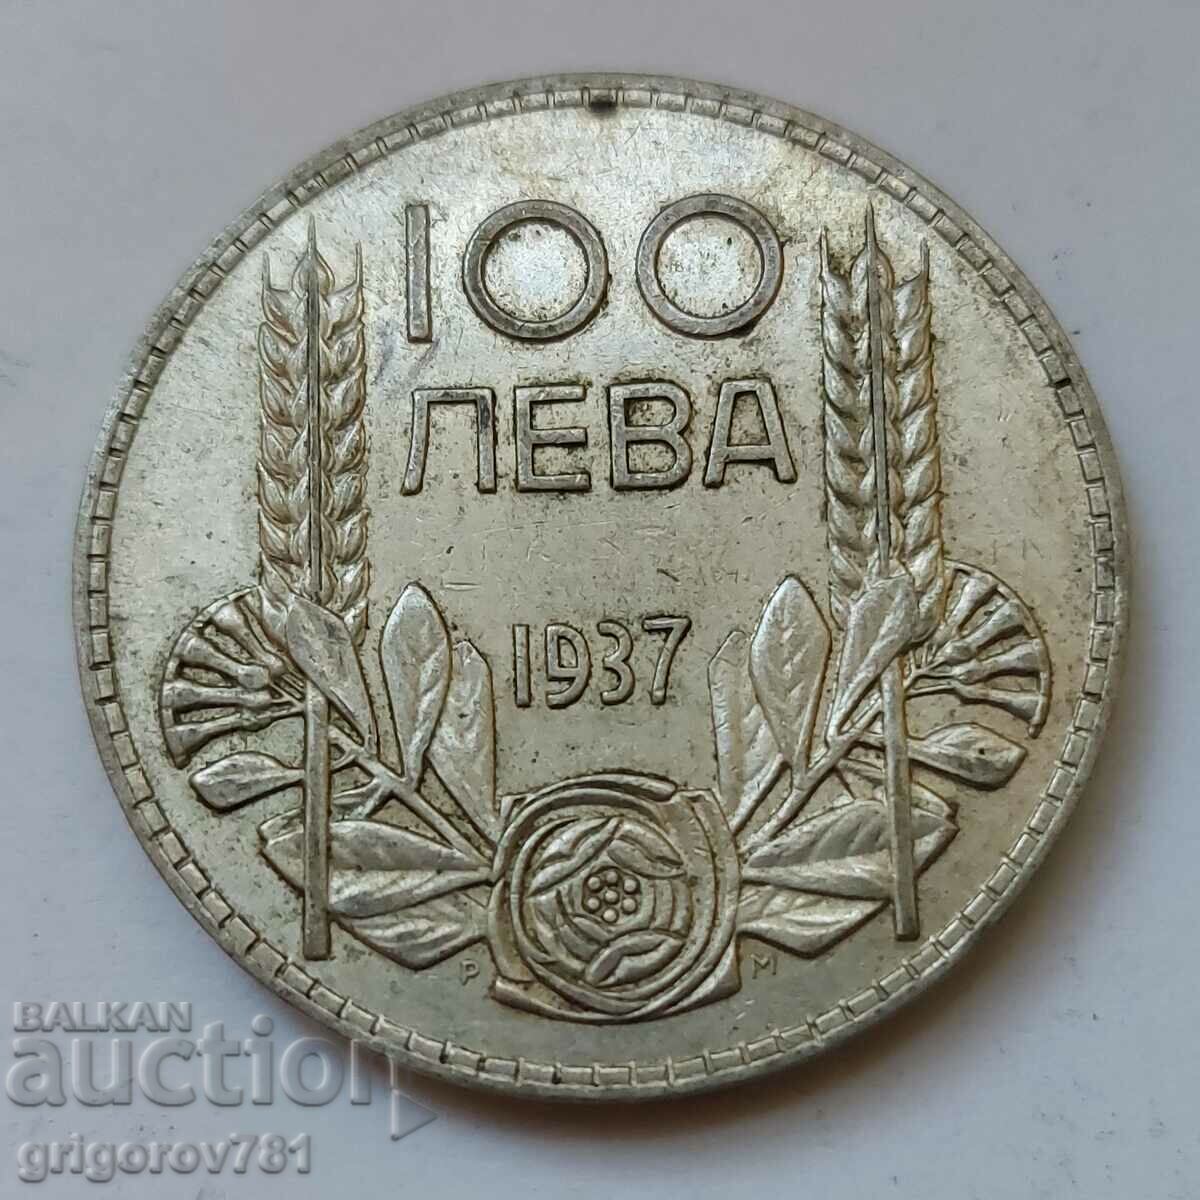 100 leva argint Bulgaria 1937 - monedă de argint #92